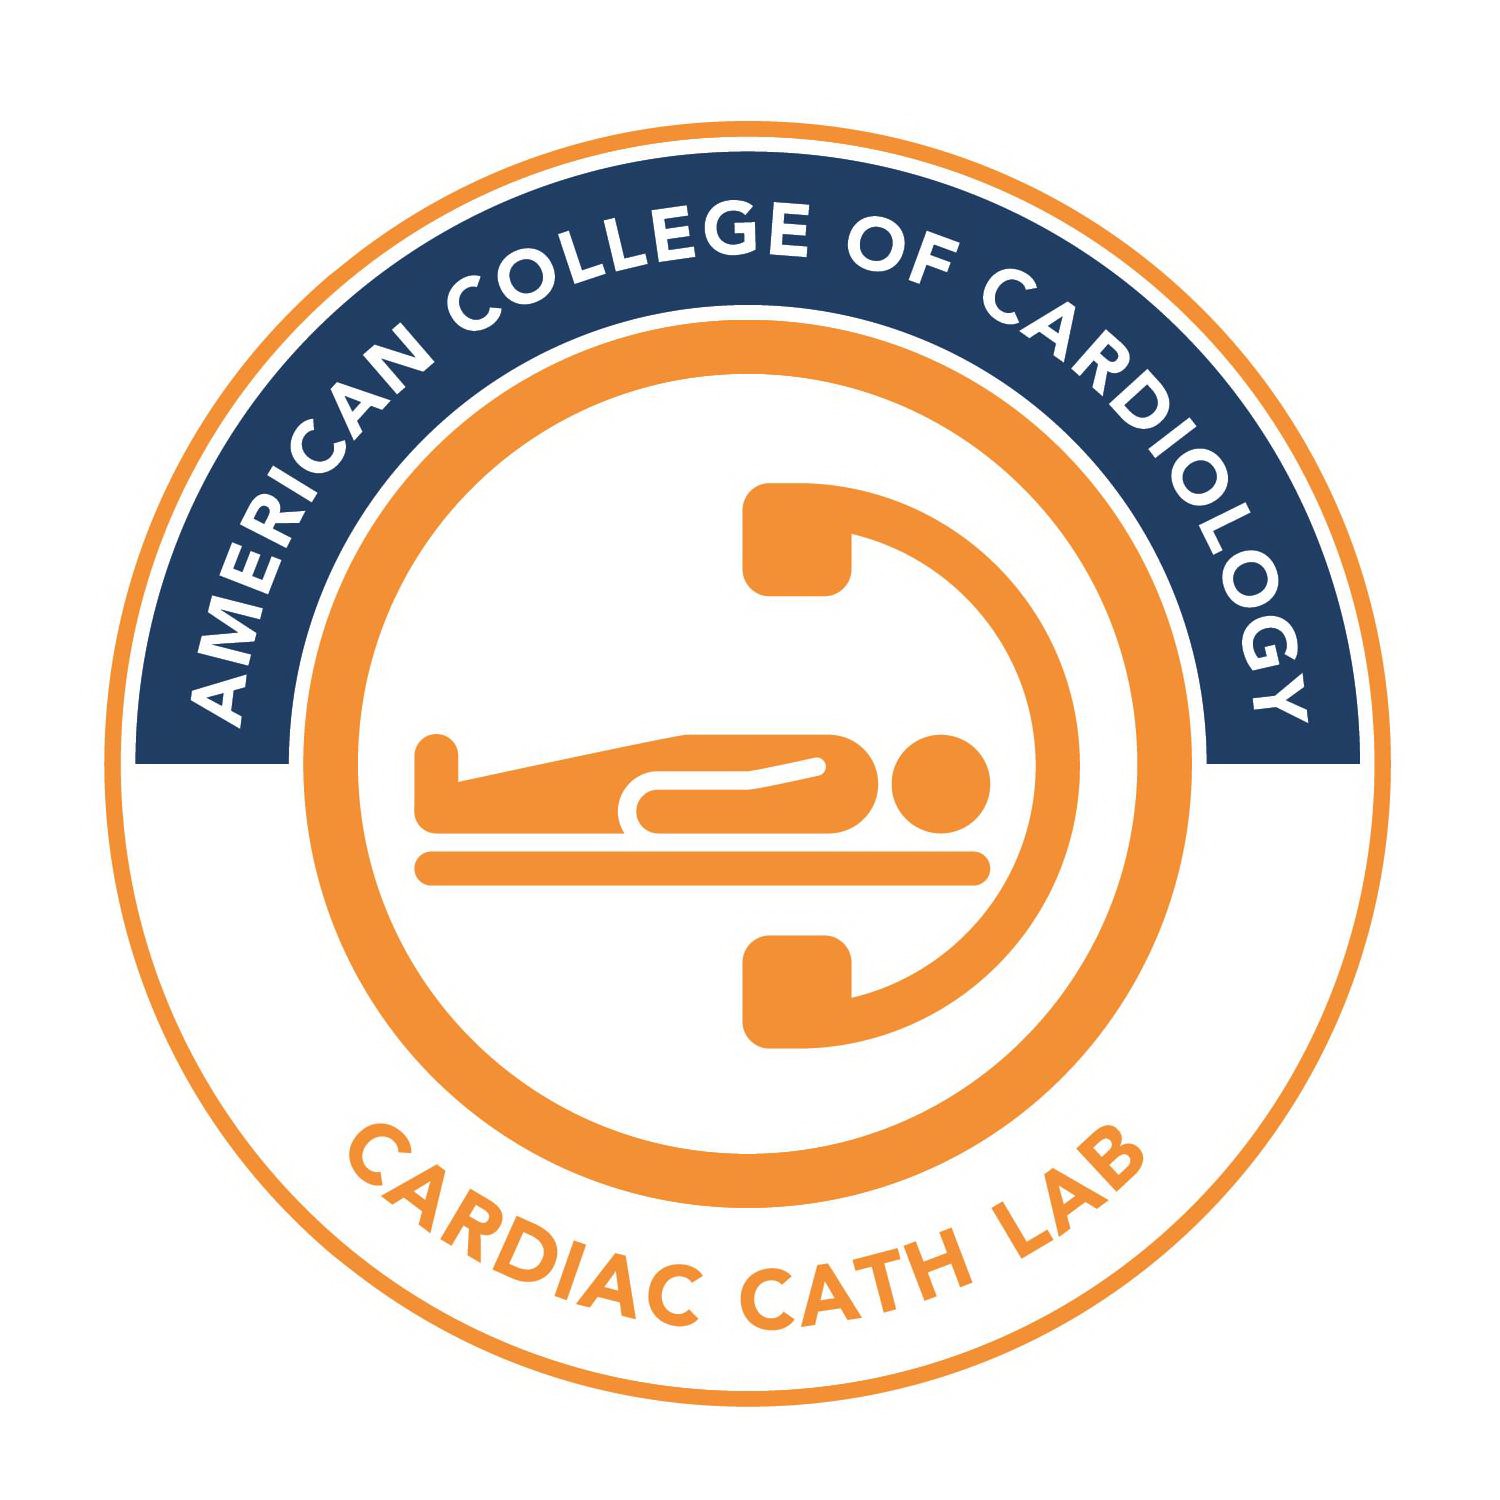  AMERICAN COLLEGE OF CARDIOLOGY CARDIAC CATH LAB